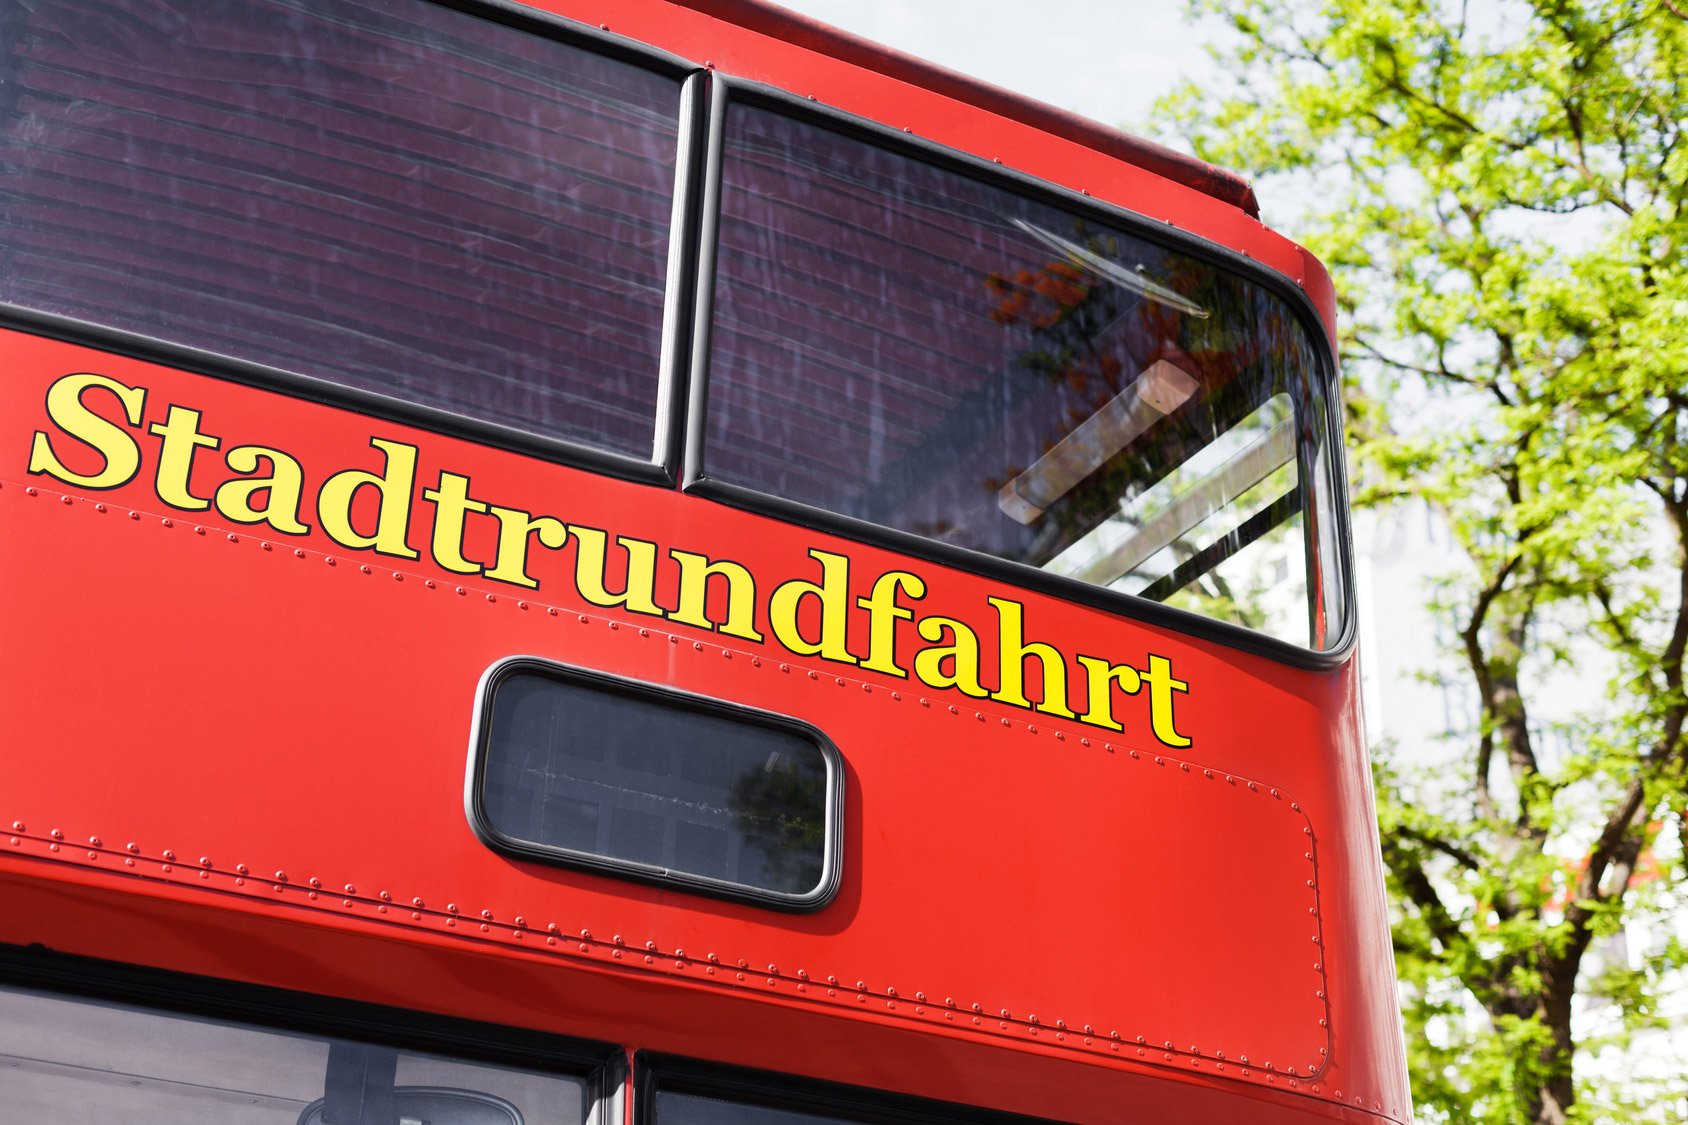 Der hintere Teil eines roten Doppeldeckerbusses mit der Aufschrift Stadtrundfahrt in gelber Schrift